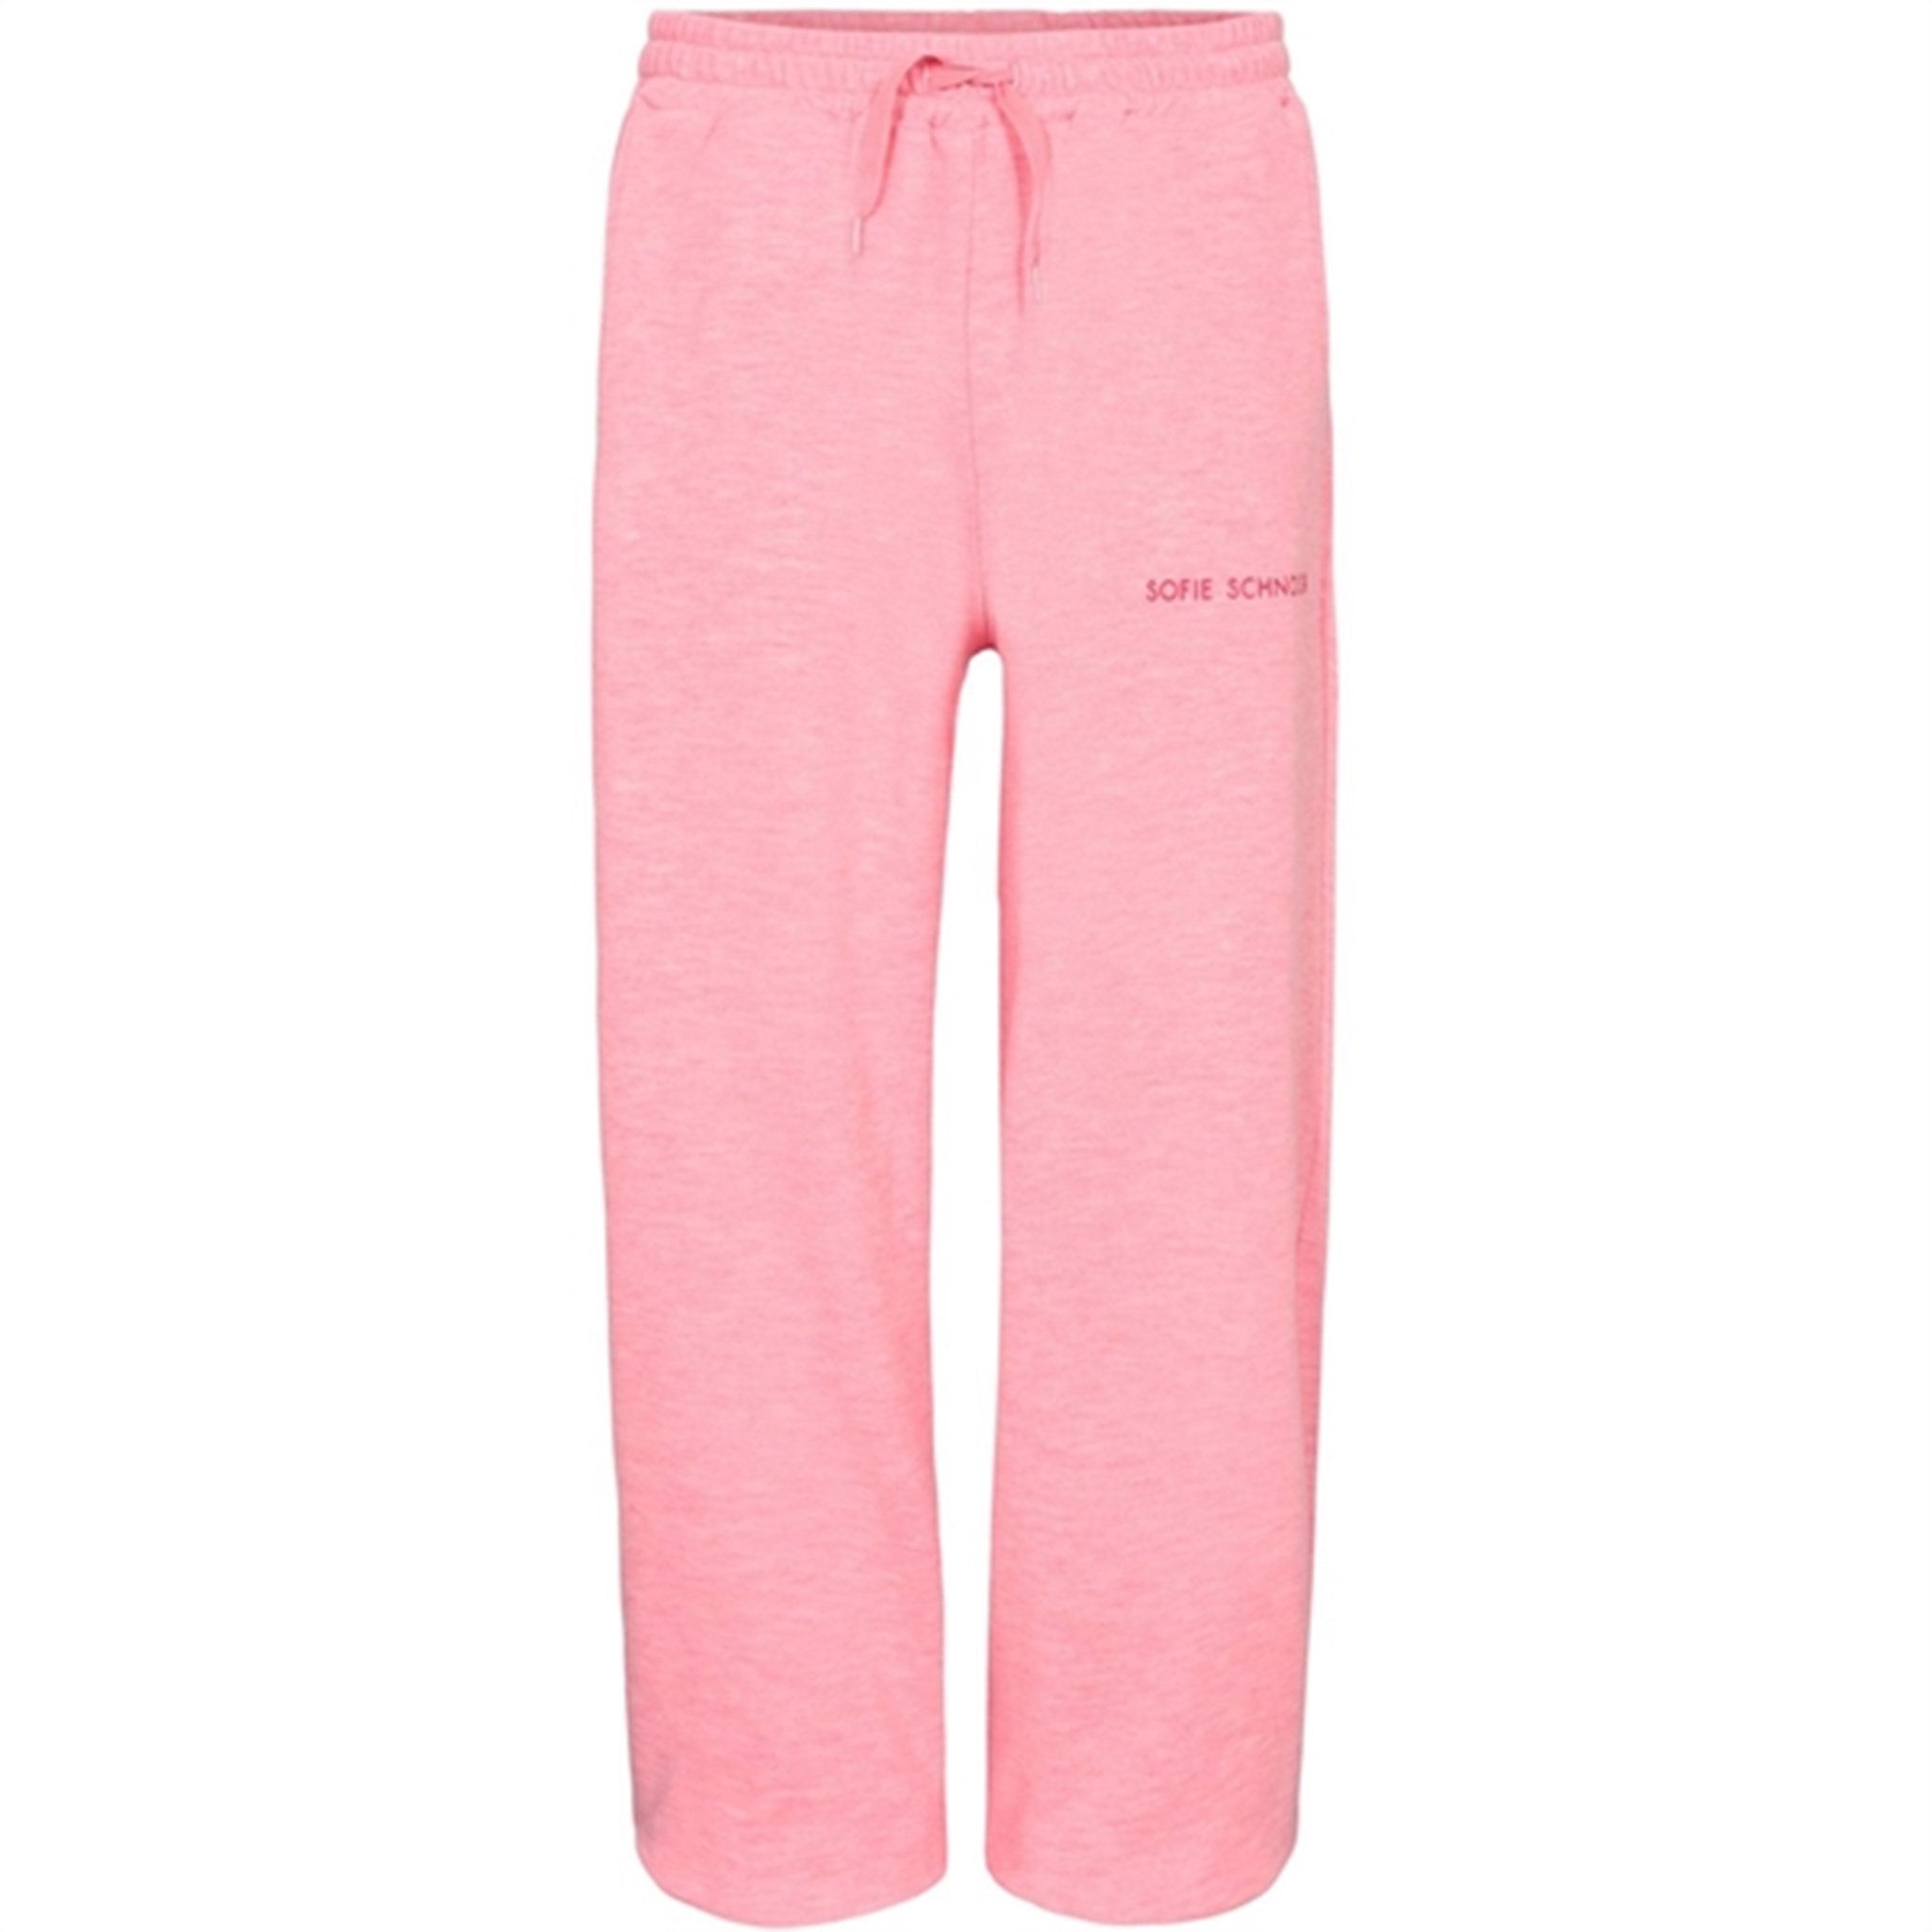 Sofie Schnoor Young Light Pink Sweatpants